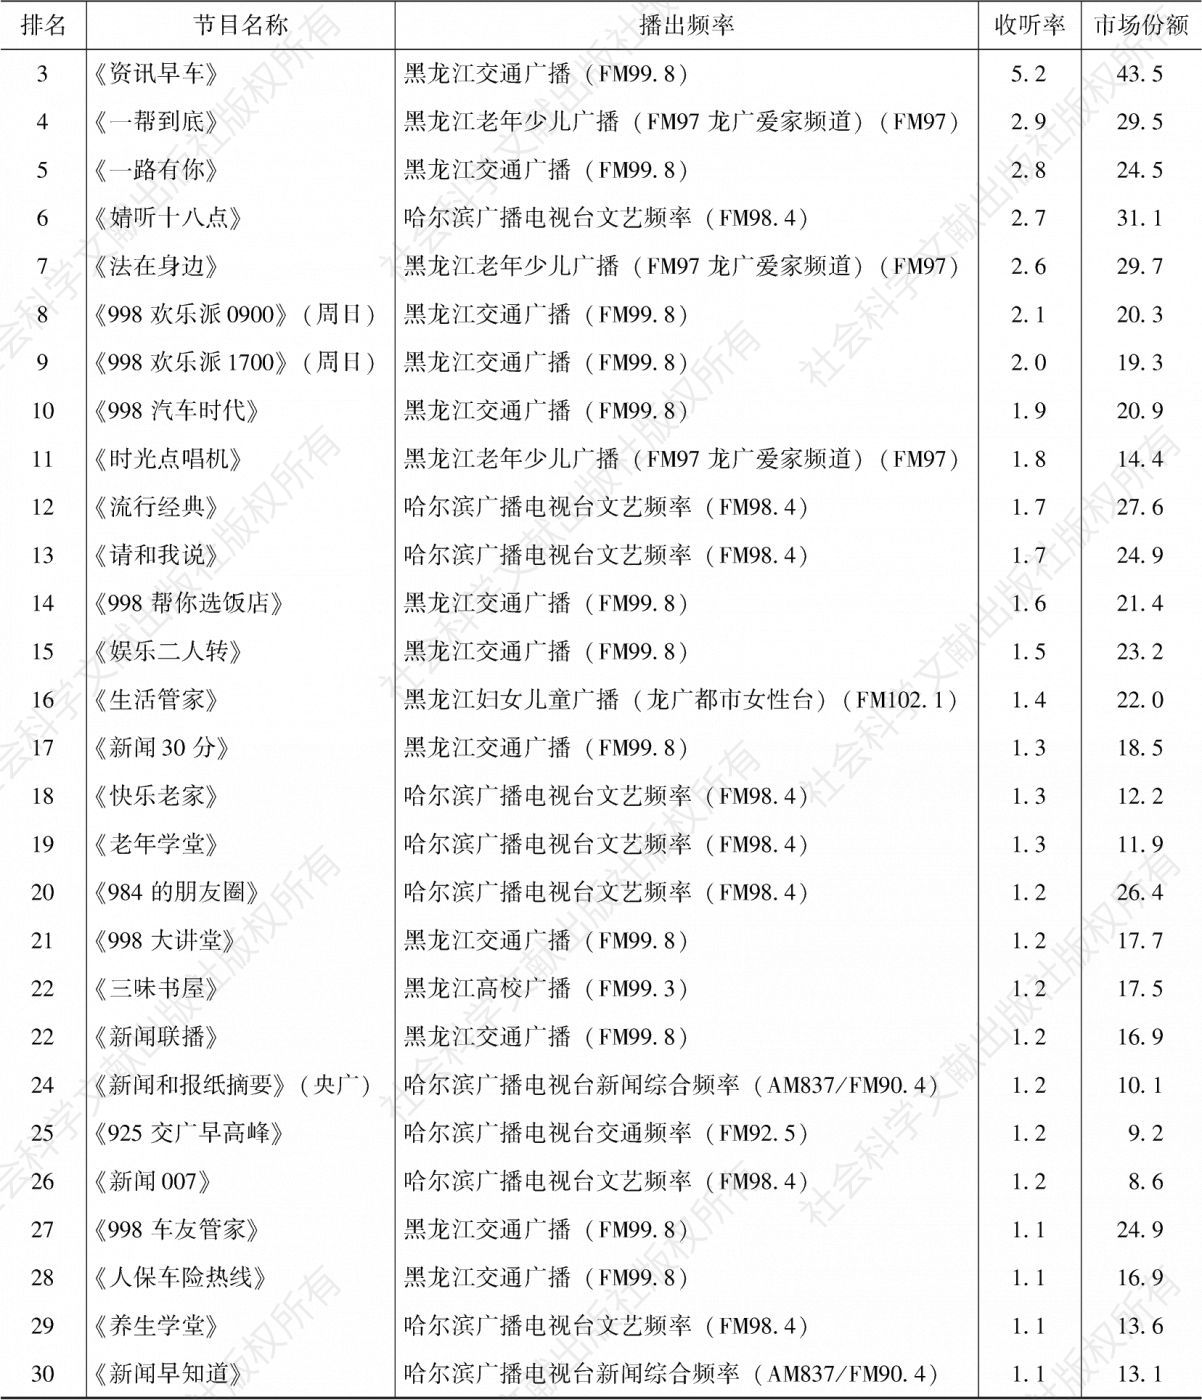 表4.9.7 2020年哈尔滨市场收听率排名前30的节目-续表